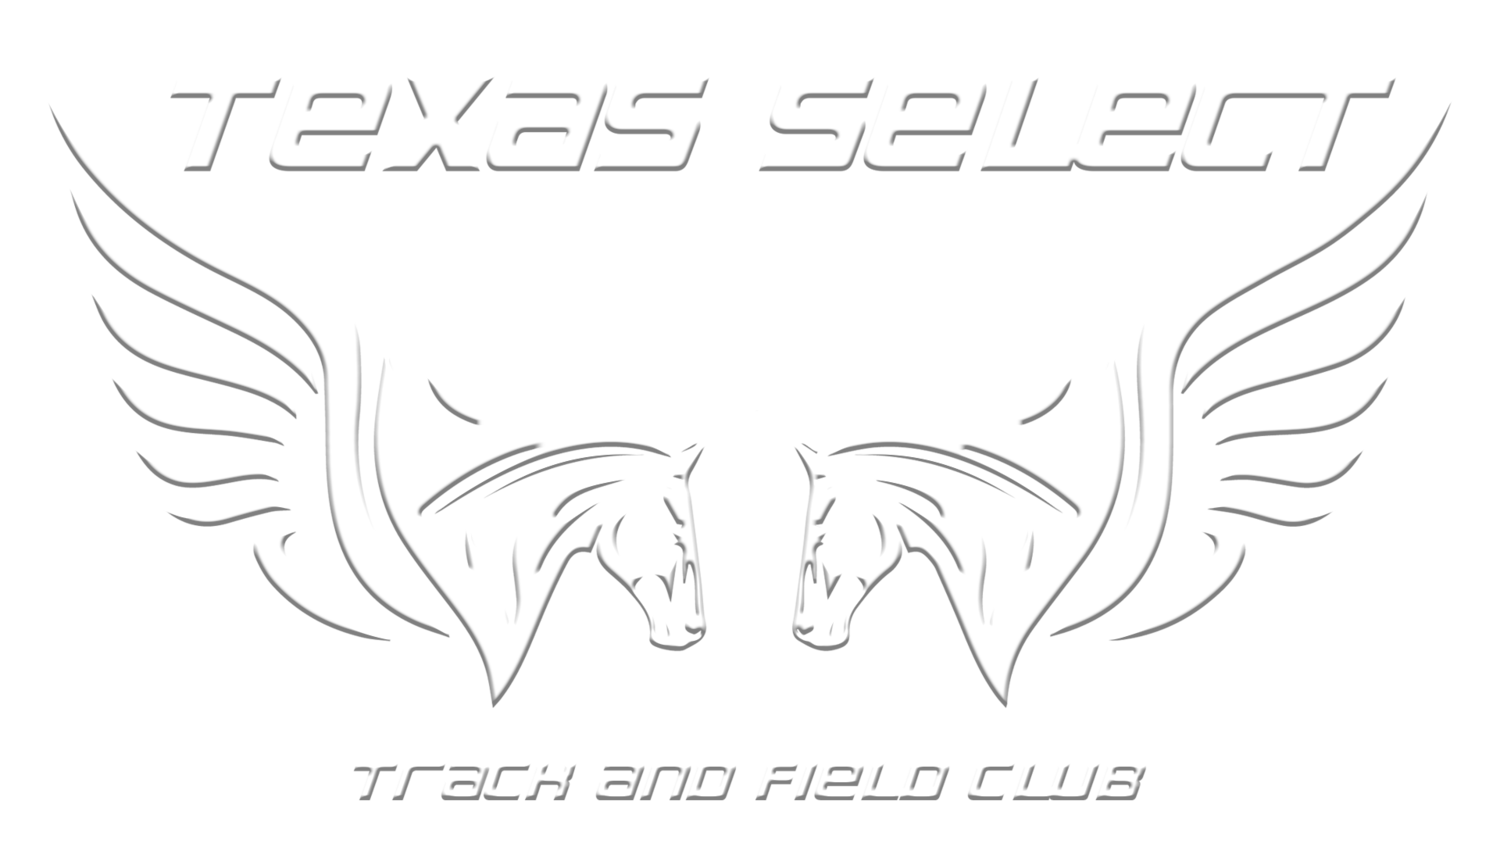 Texas Select XC Track Club